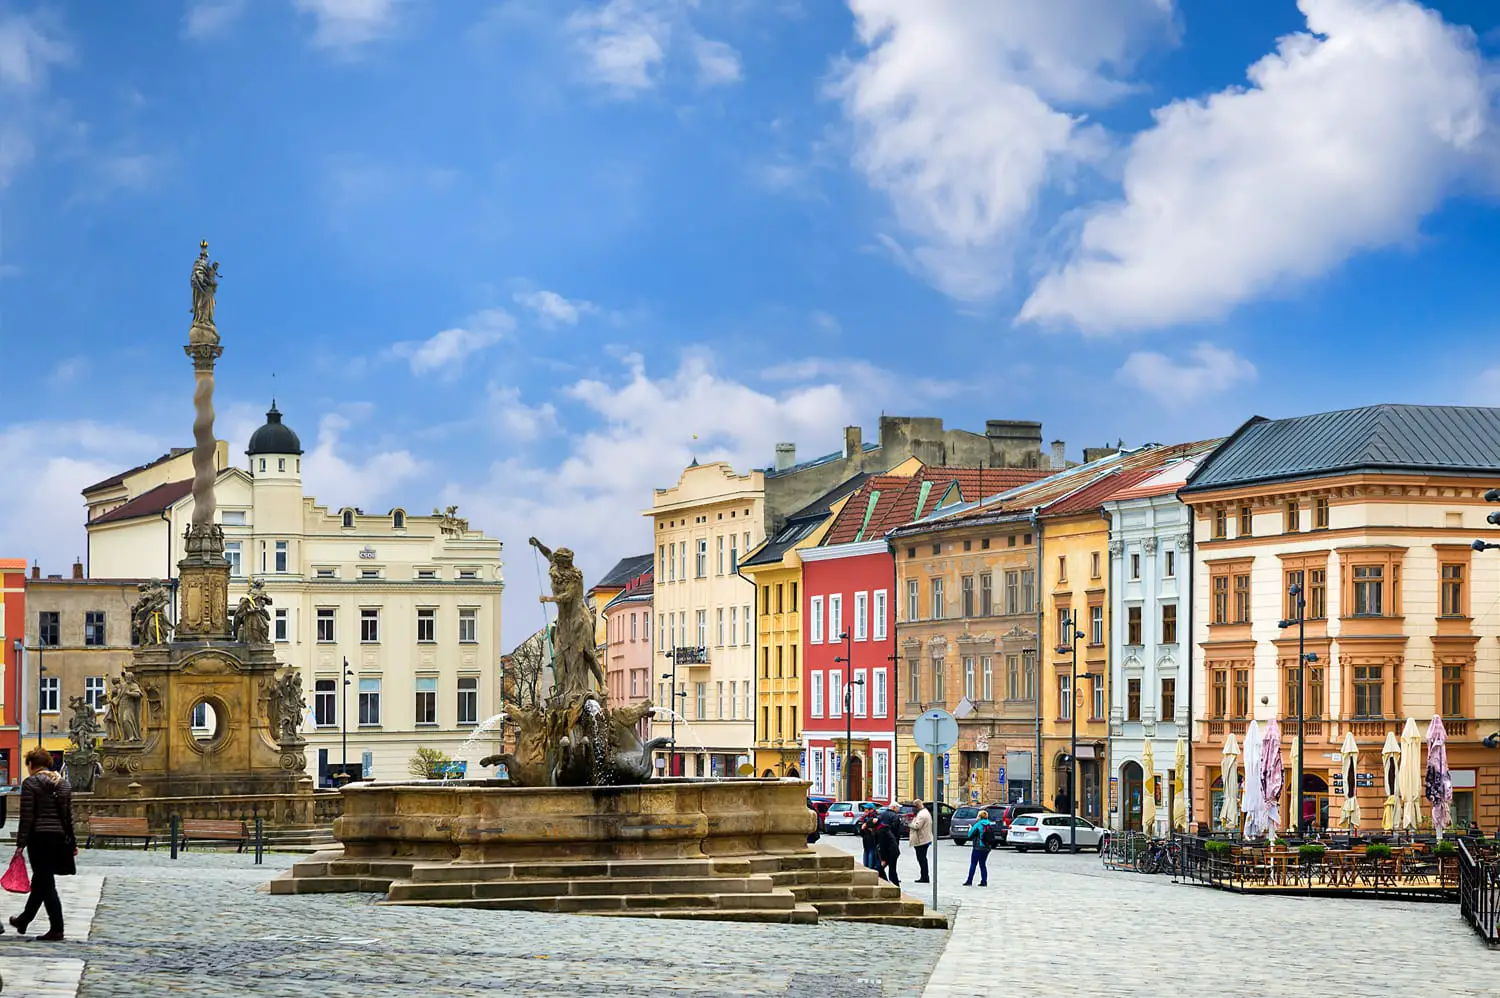 Ιστορικά αξιοθέατα του Όλομουτς στην Τσεχία.